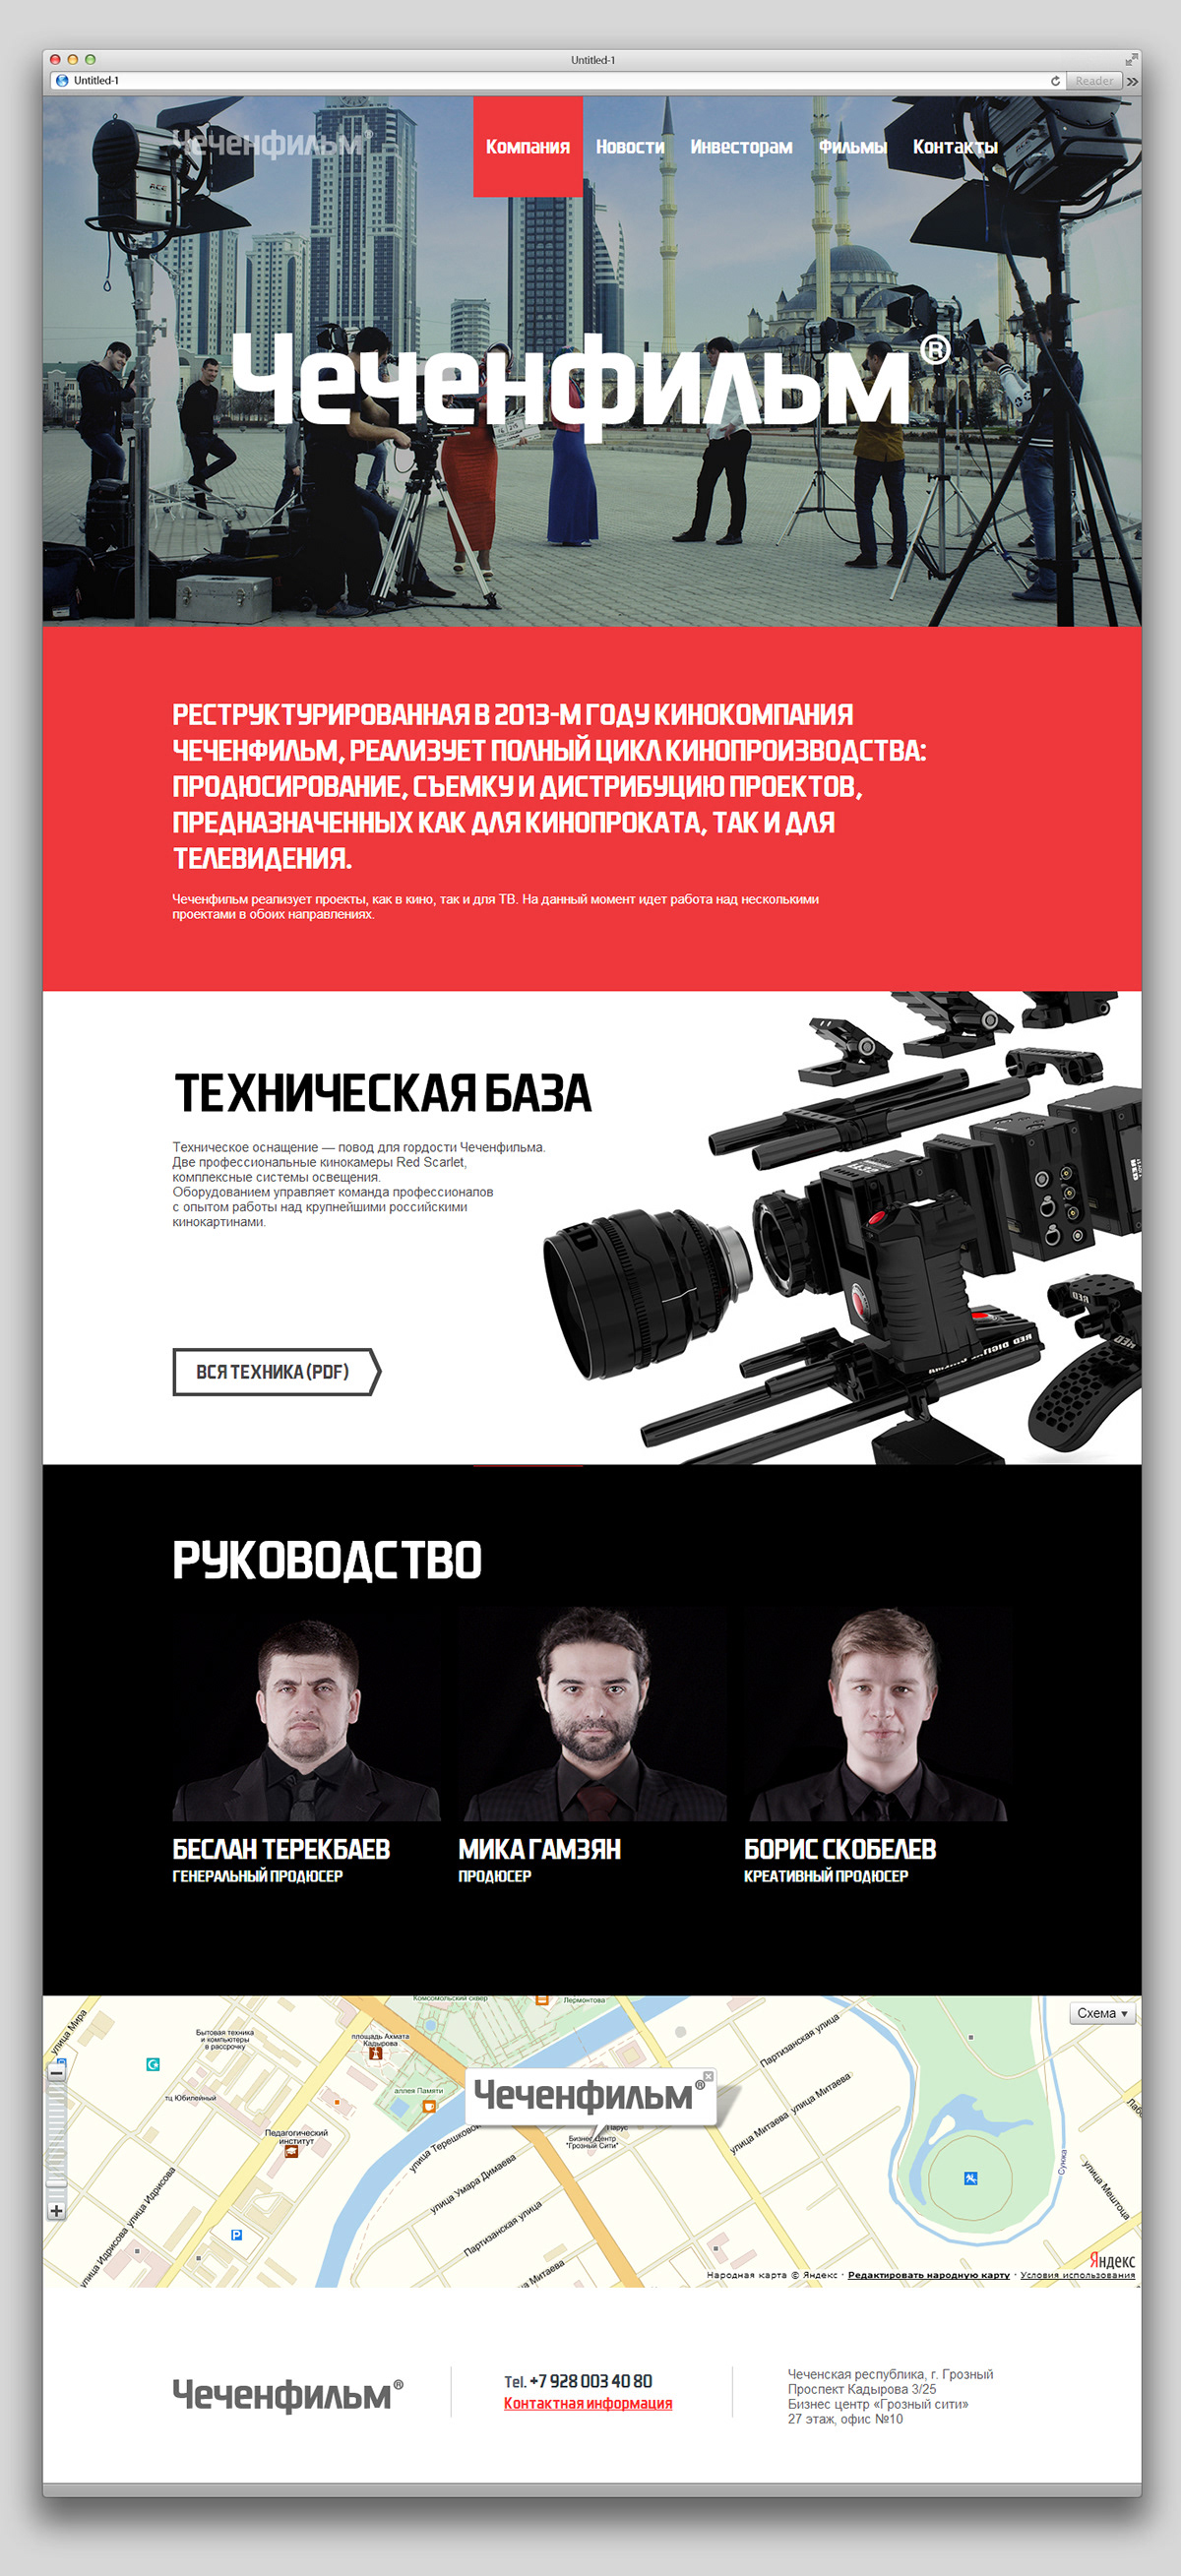 Film company russian